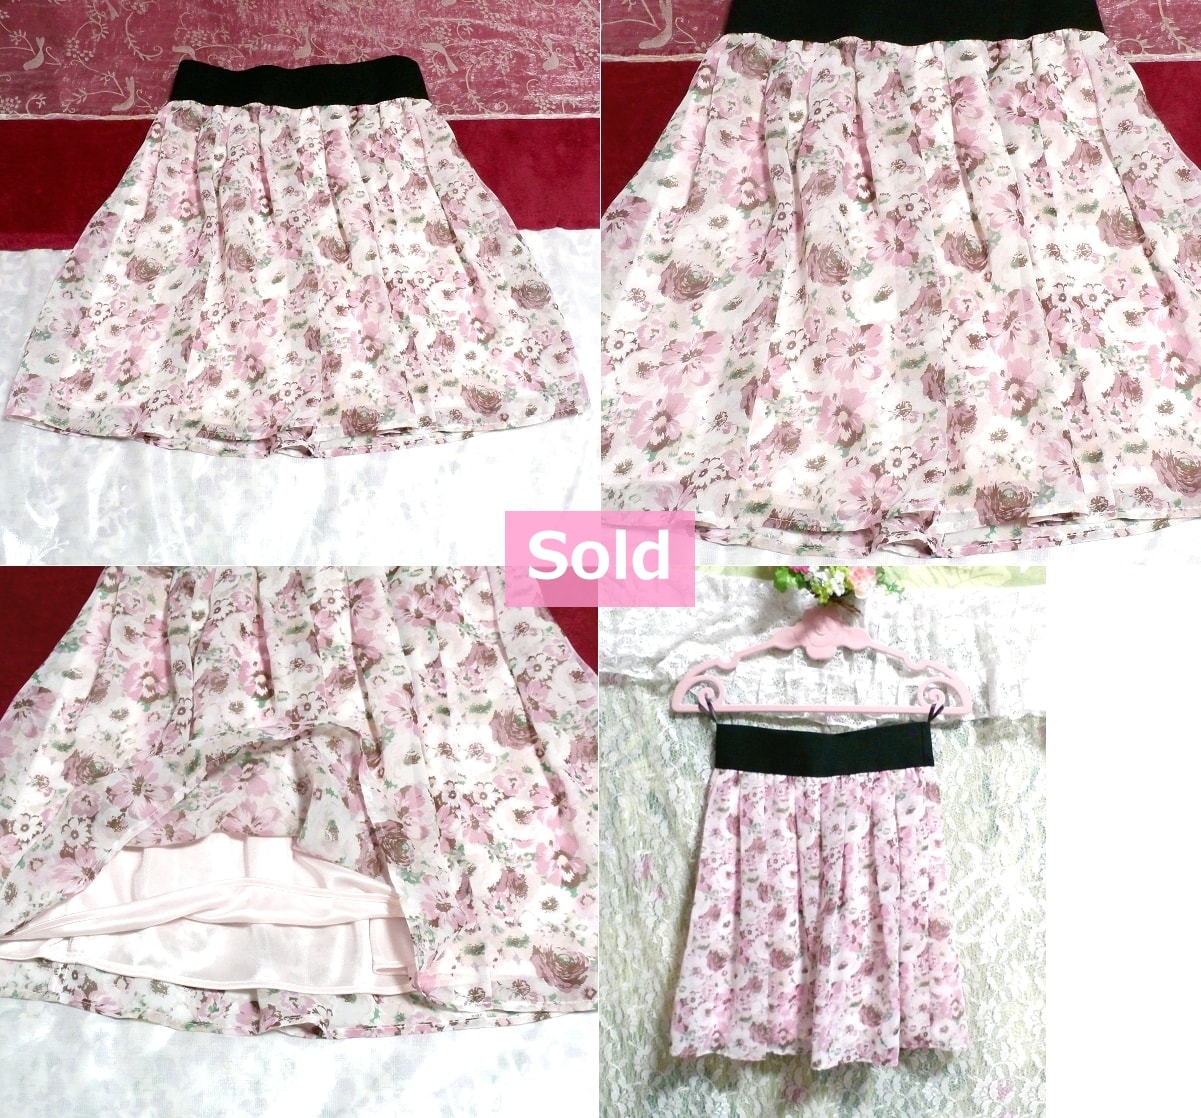 黒ウエストピンクと白ホワイト花柄シフォンフレアミニスカート Black waist pink and white floral pattern chiffon flare mini skirt